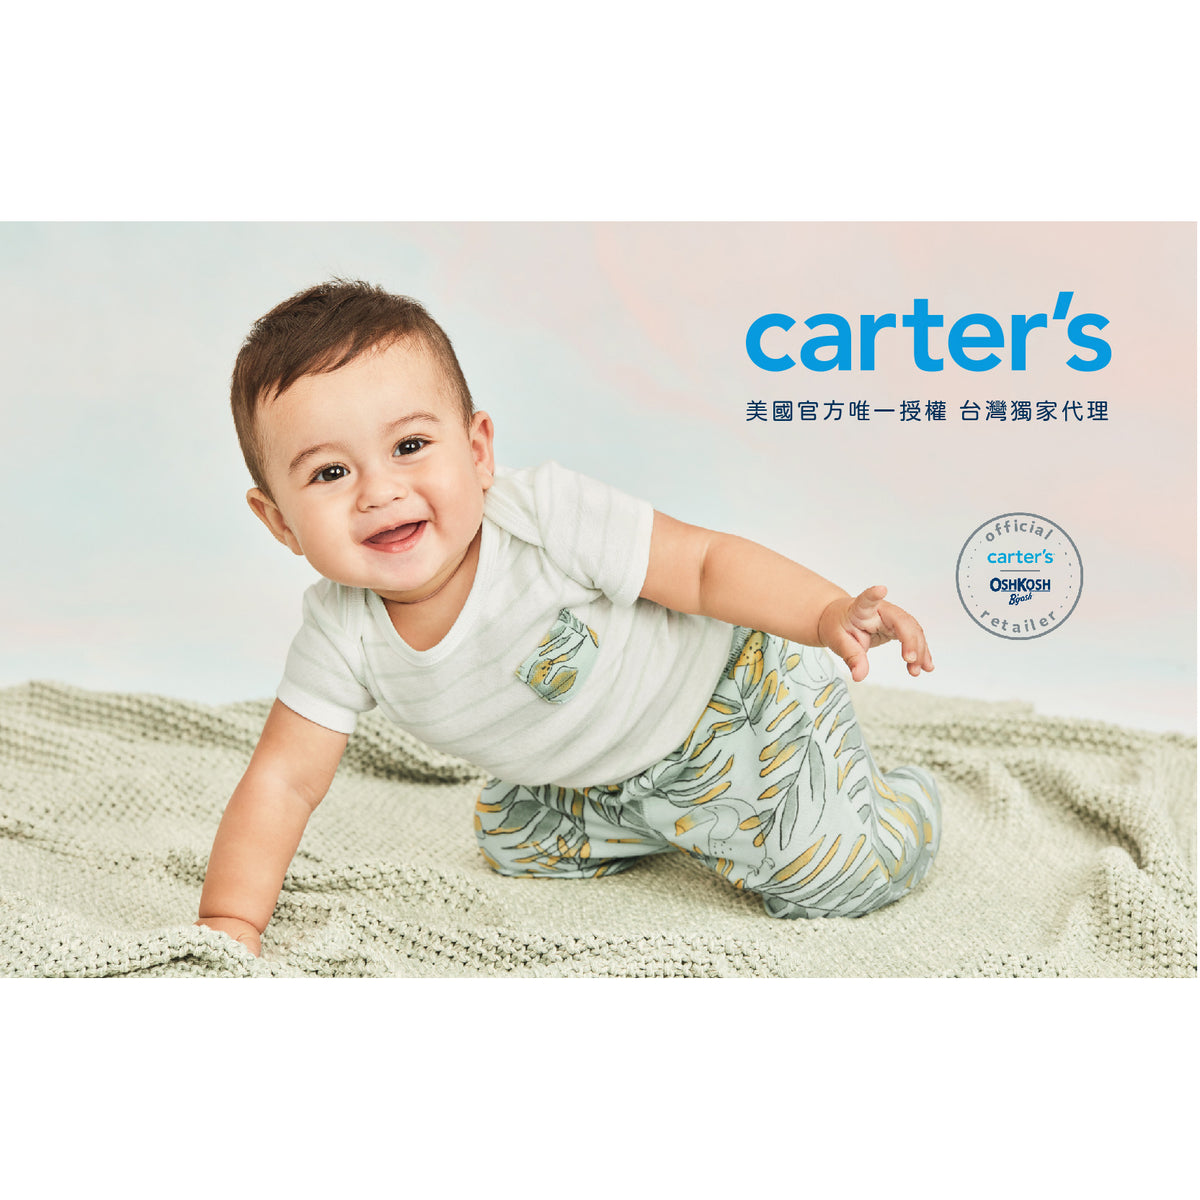 Carter's 聖誕圖騰連身褲(6M-24M)